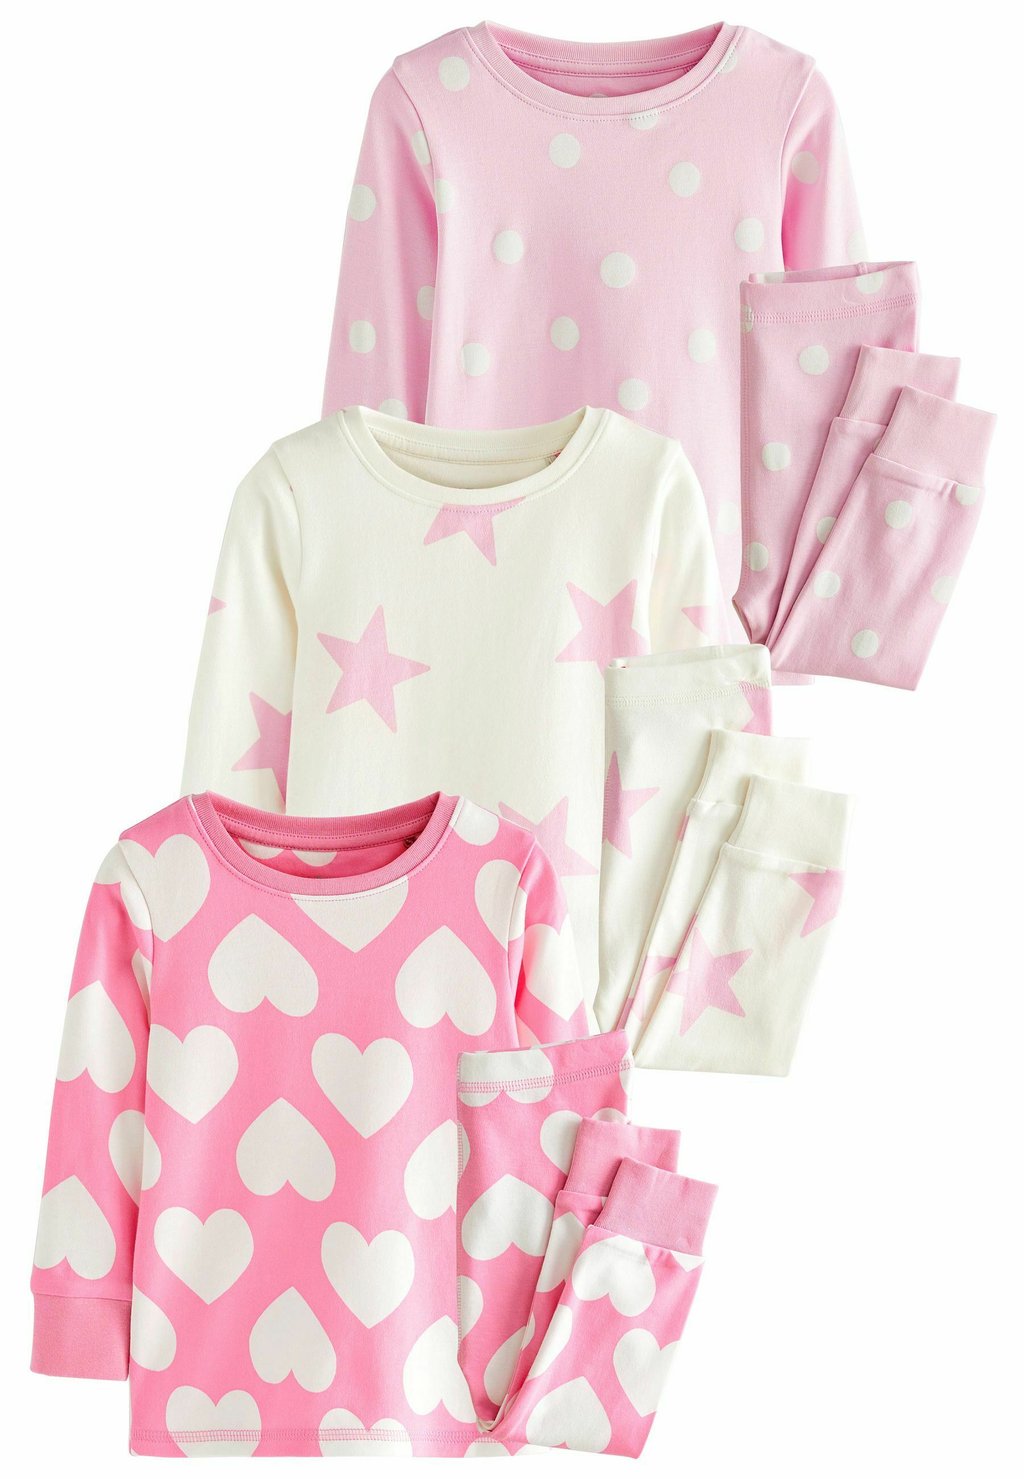 Пижамы Heart, Spot And Star Pyjamas 3 Pack Next, цвет pink white пижамы slogan set 3 pack next цвет pink grey white